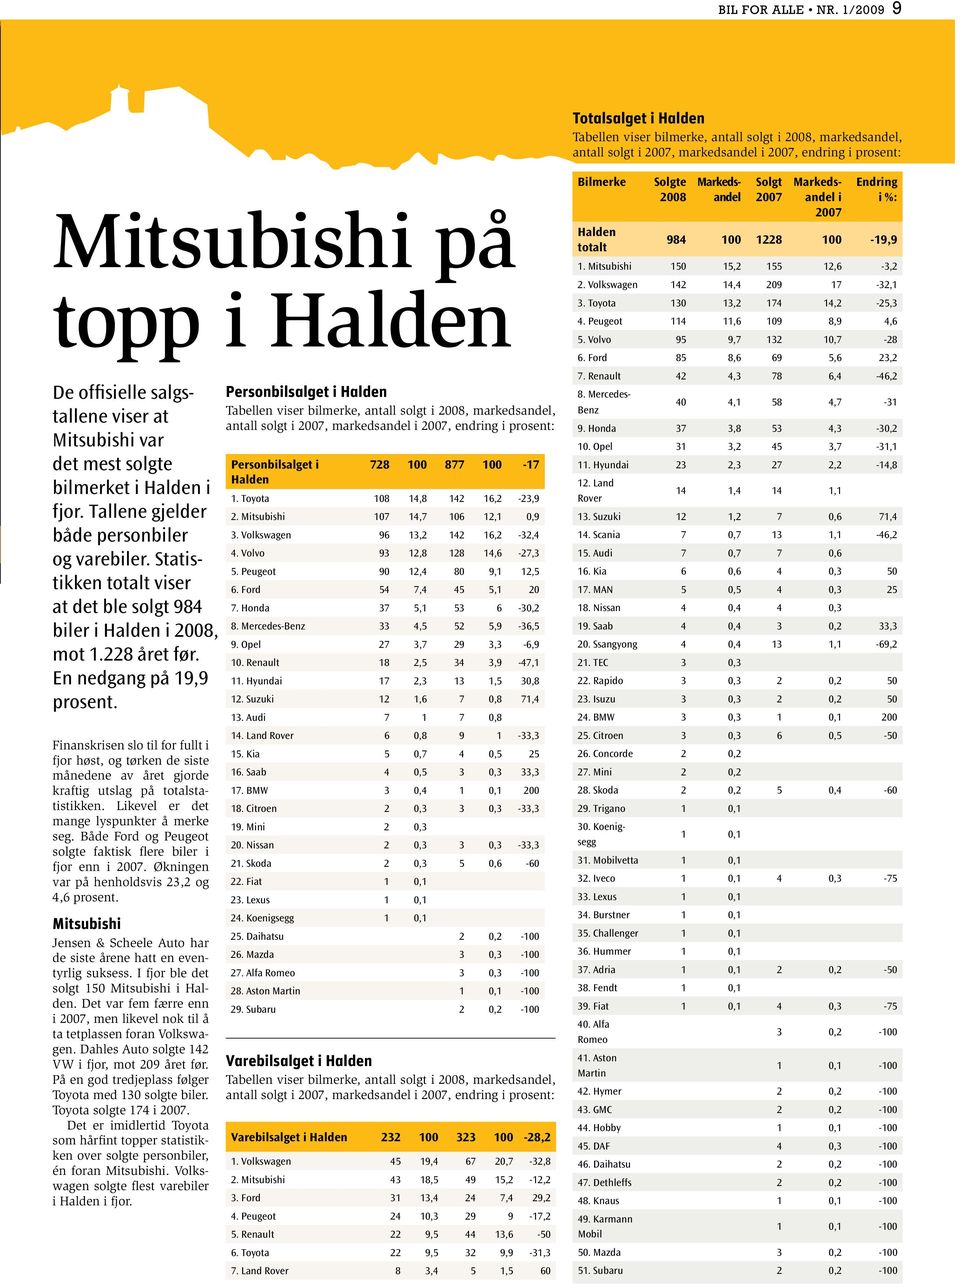 salgstallene viser at Mitsubishi var det mest solgte bilmerket i Halden i fjor. Tallene gjelder både personbiler og varebiler.